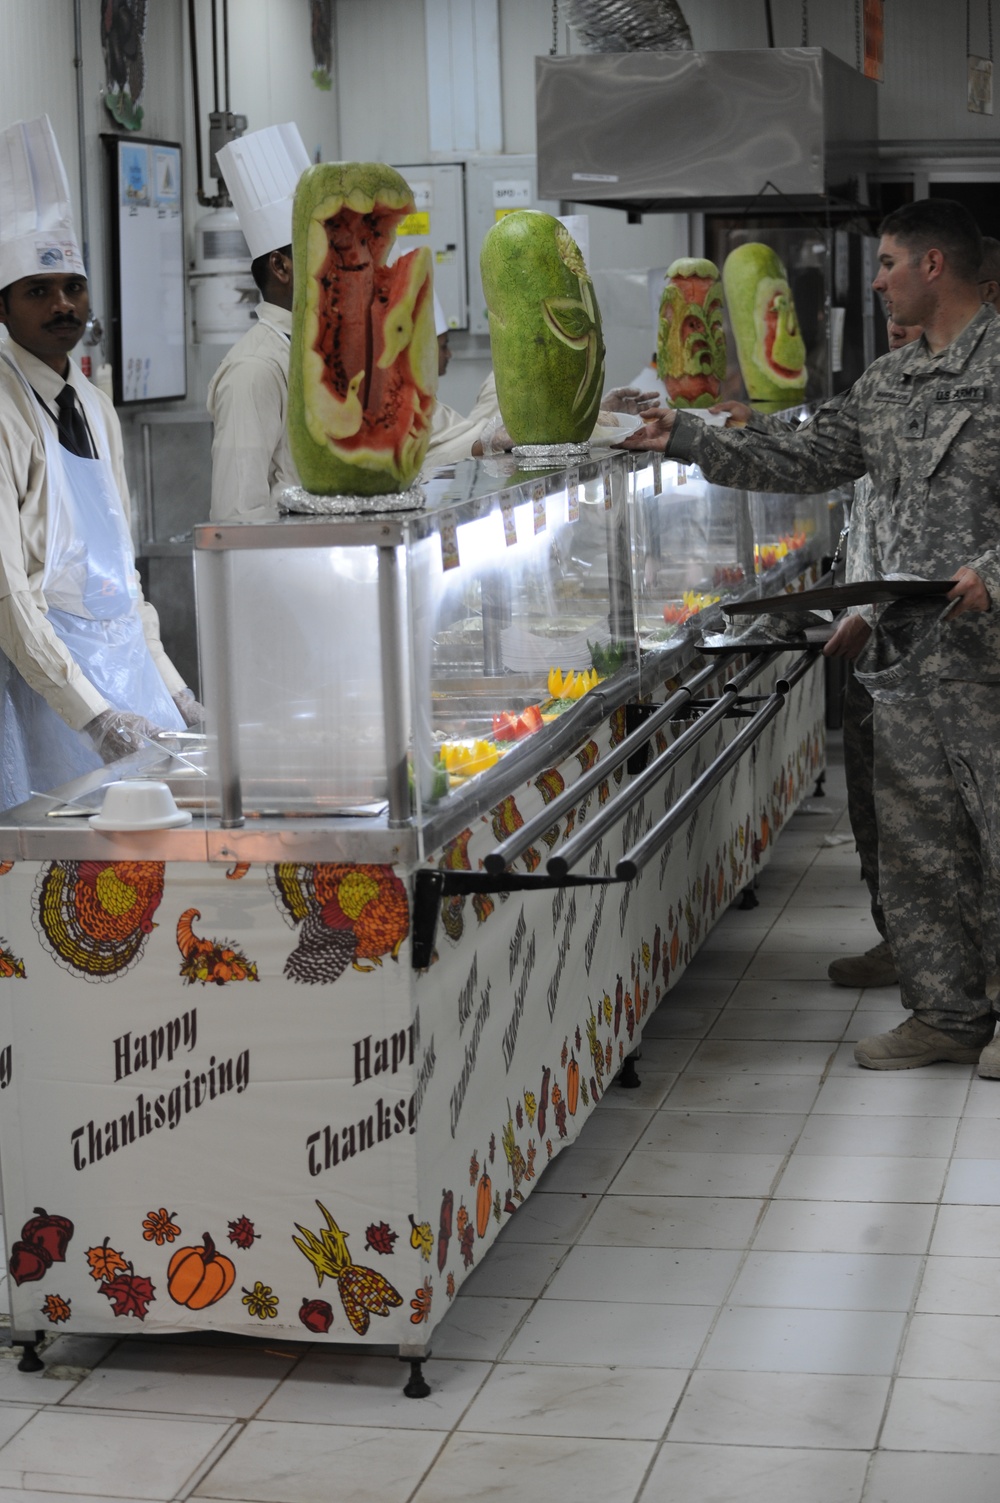 Thanksgiving at Forward Operating Base Rustamiyah